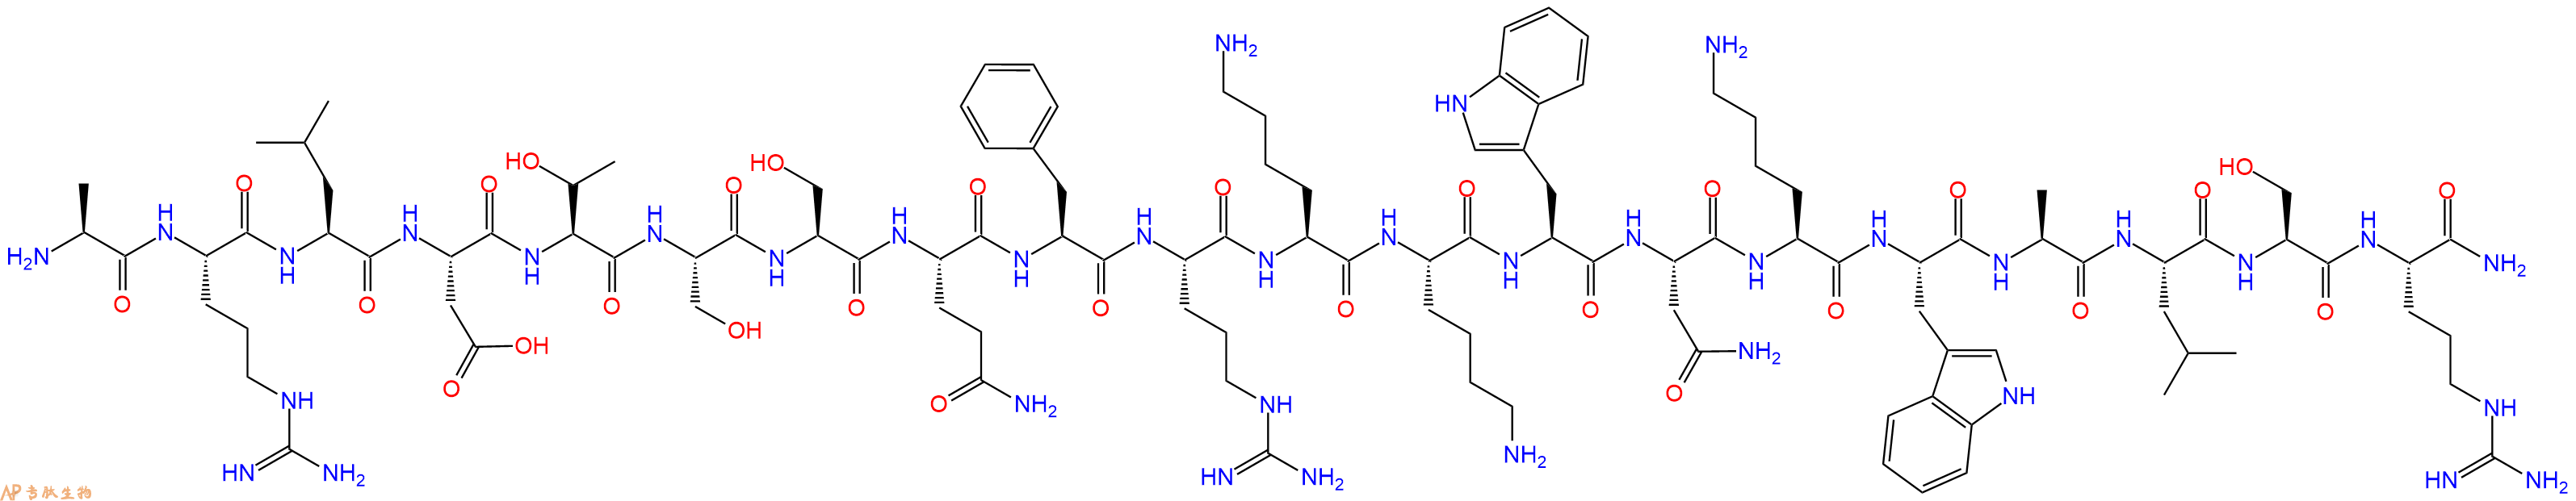 专肽生物产品肾上腺髓质素 Pro-Adrenomedullin(N-20), rat167699-60-7